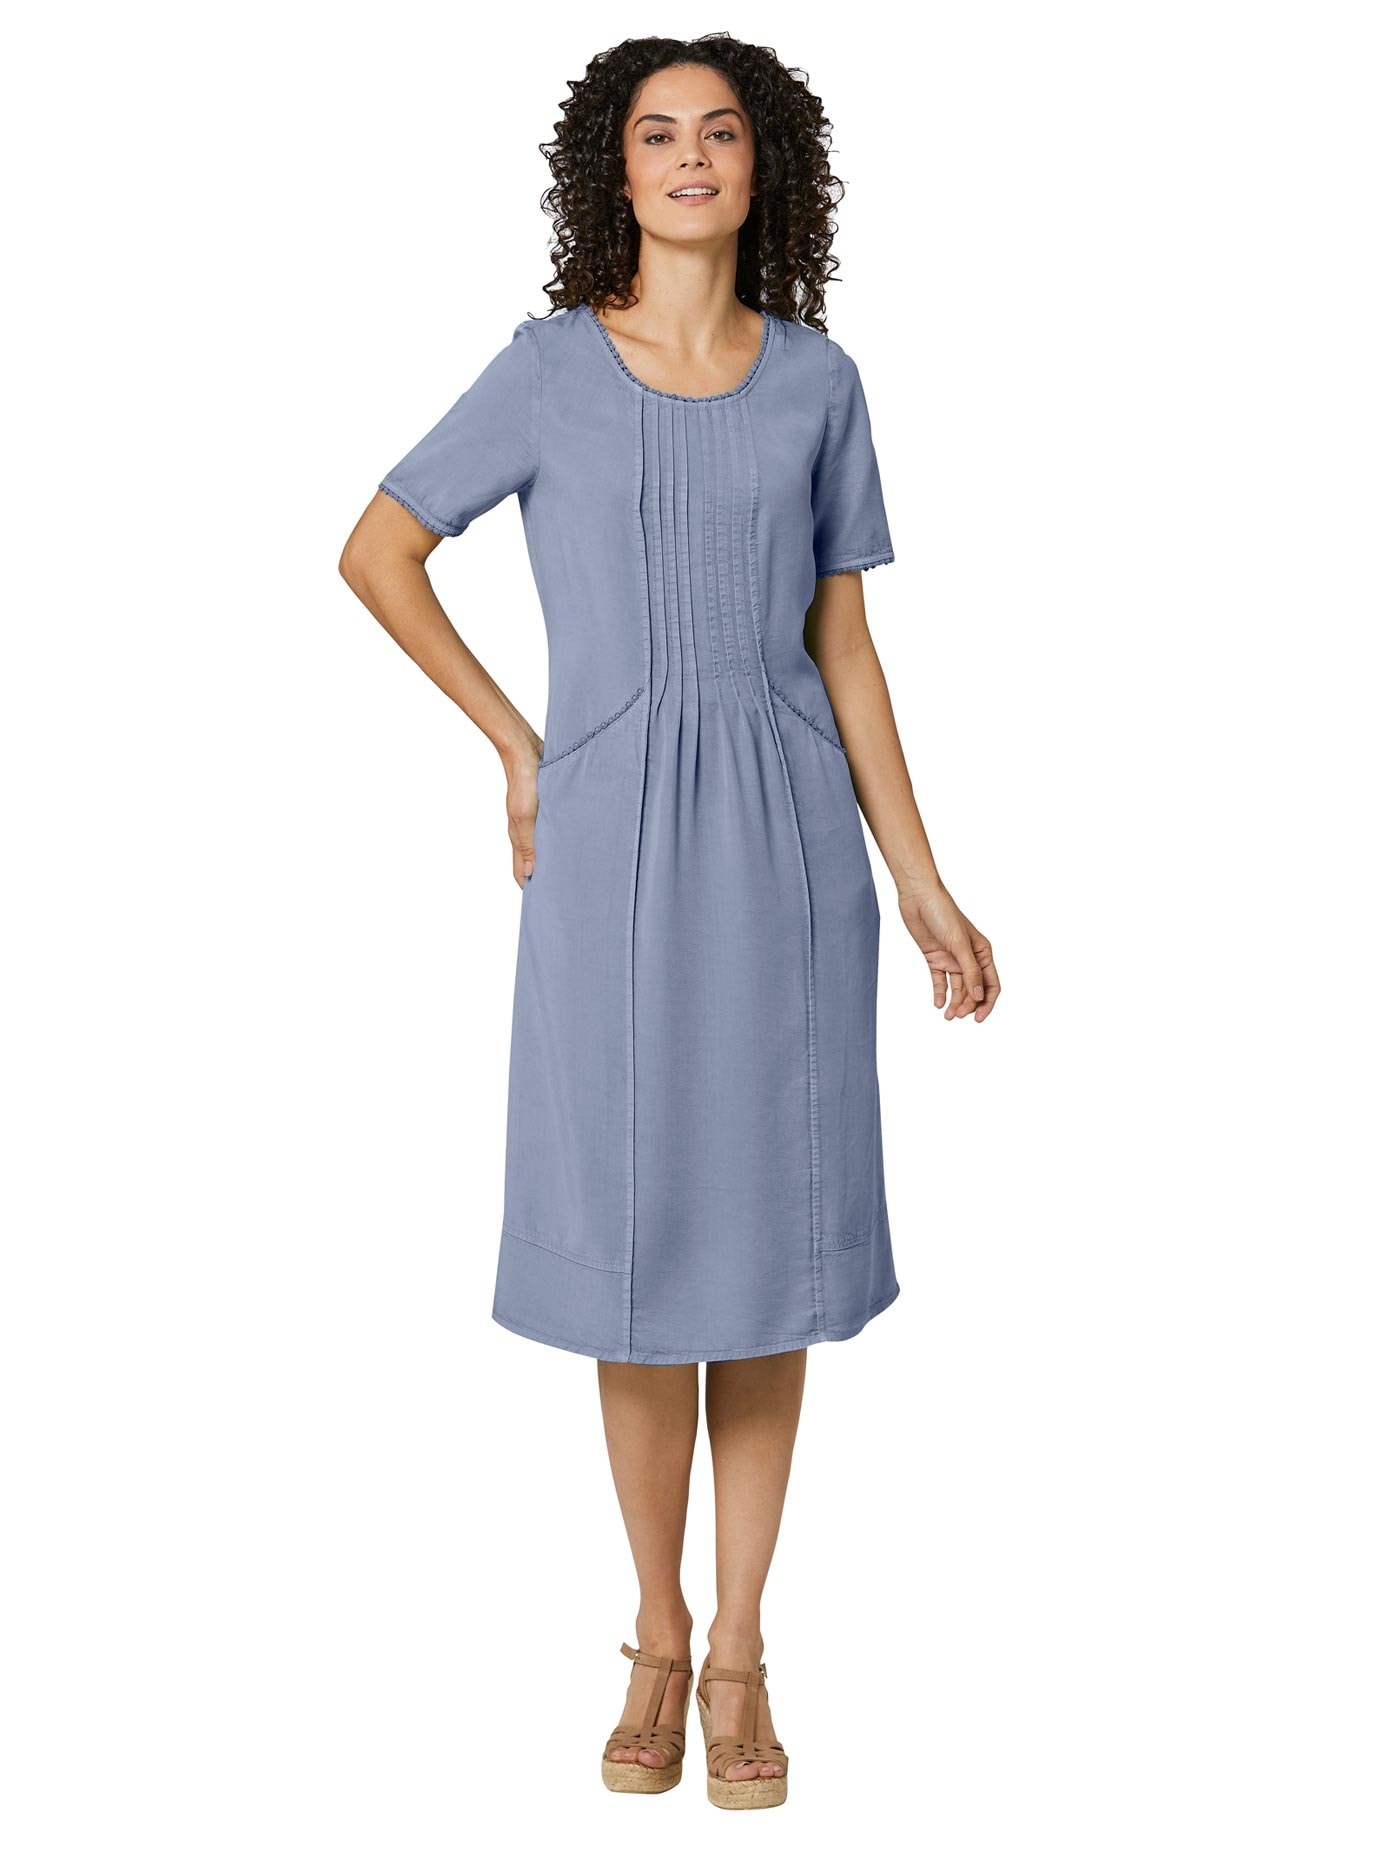 Sommerkleid Spitze online einkaufen im OTTO Onlineshop - schnell und einfach